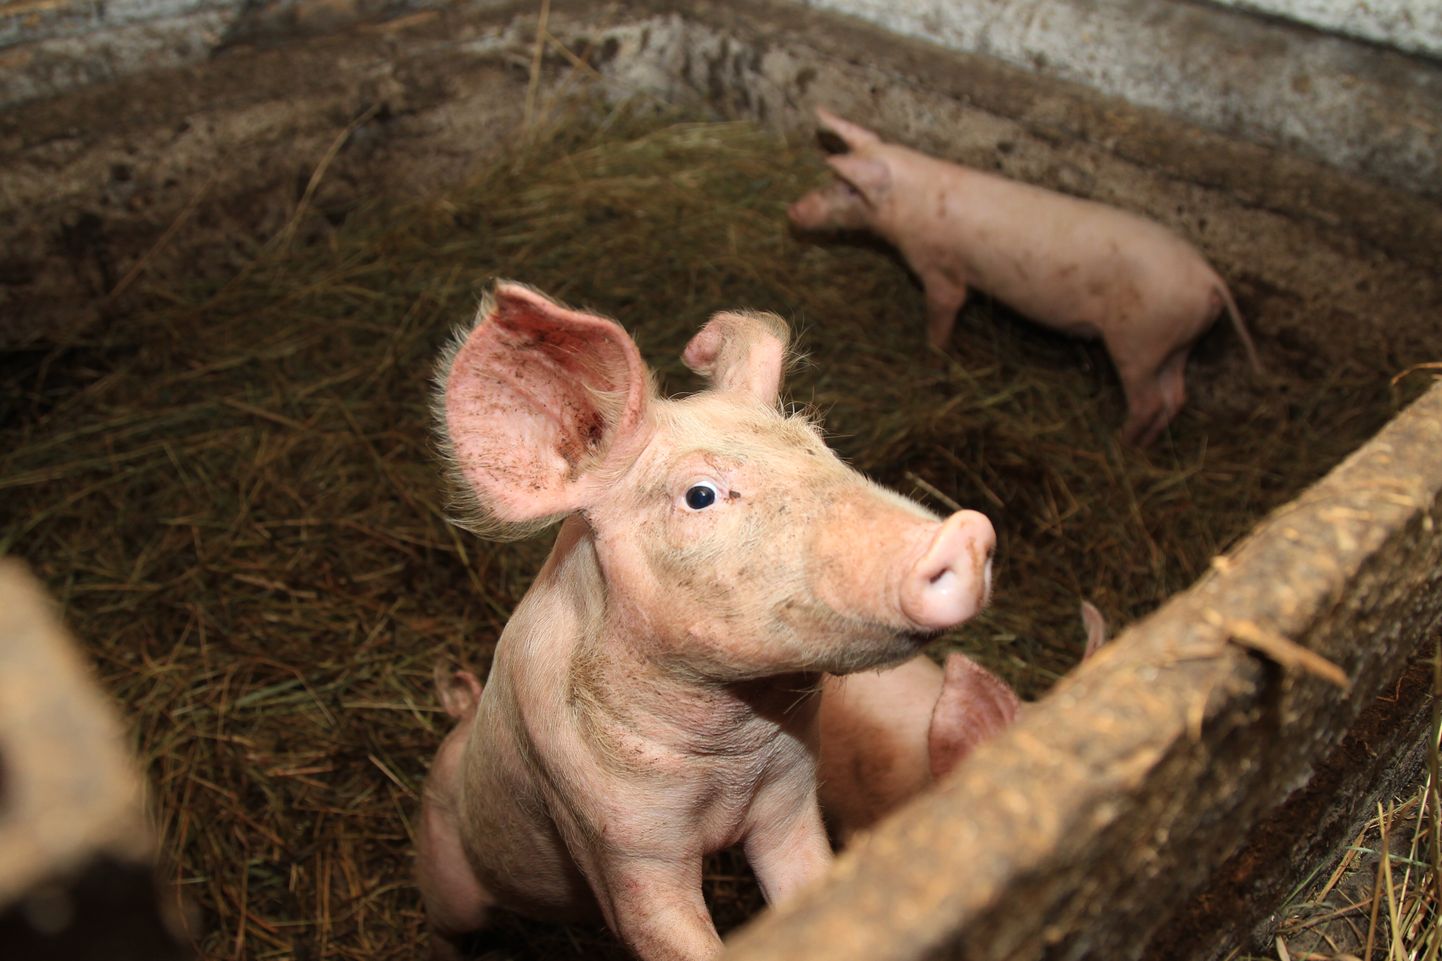 Китайцы - третьи в мире по потреблению свинины, которая в их продуктовой корзине является важным компонентом.